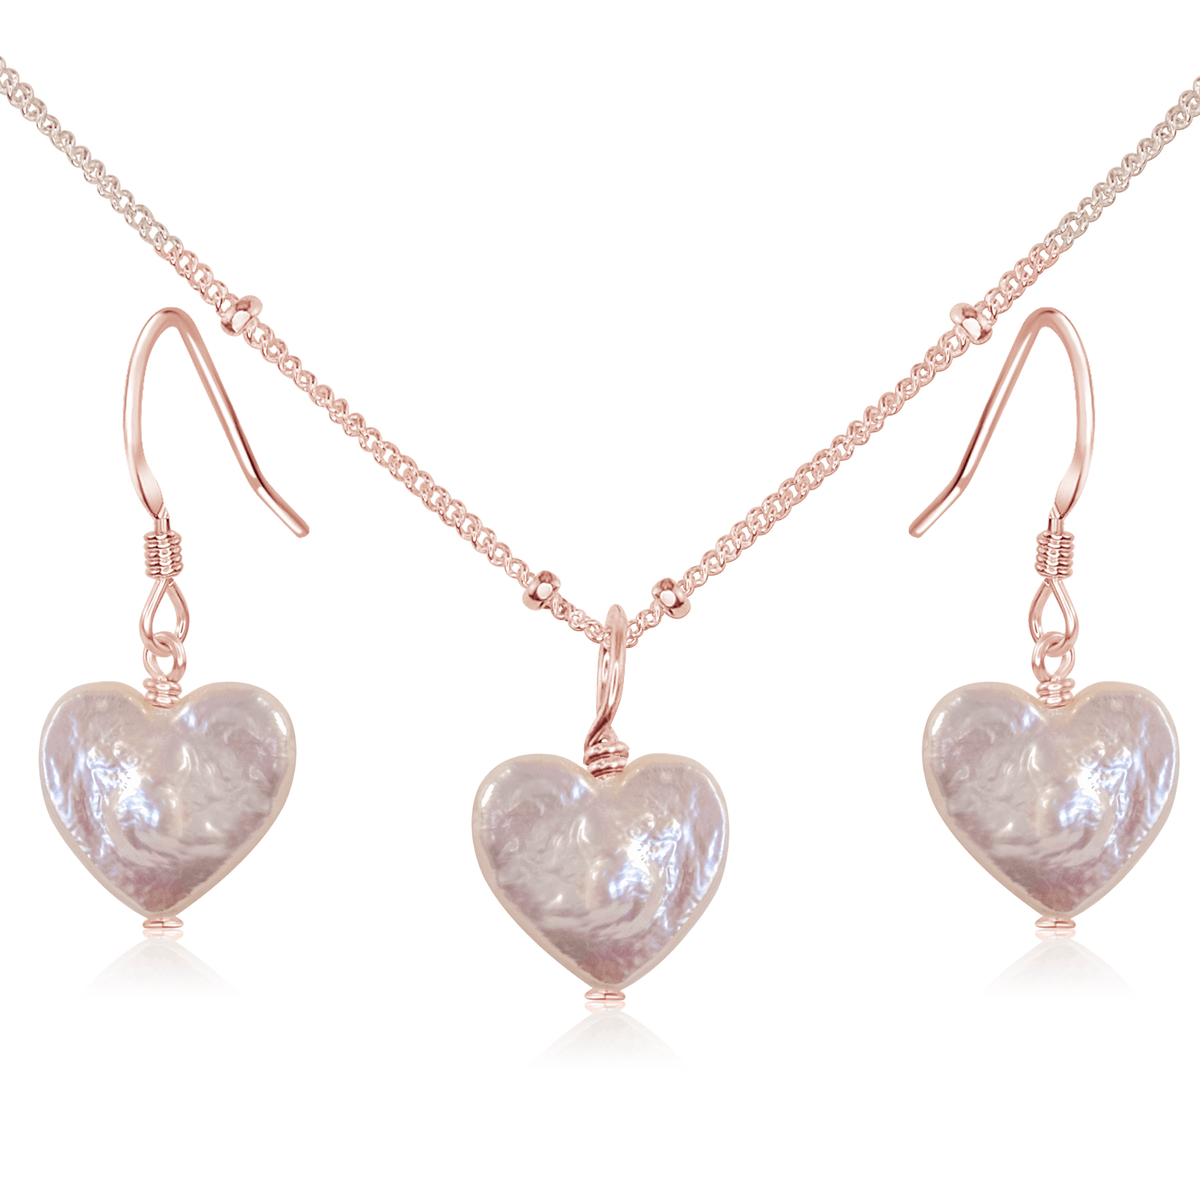 Freshwater Pearl Heart Jewellery Set - Freshwater Pearl Heart Jewellery Set - 14k Rose Gold Fill / Satellite / Necklace & Earrings - Luna Tide Handmade Crystal Jewellery